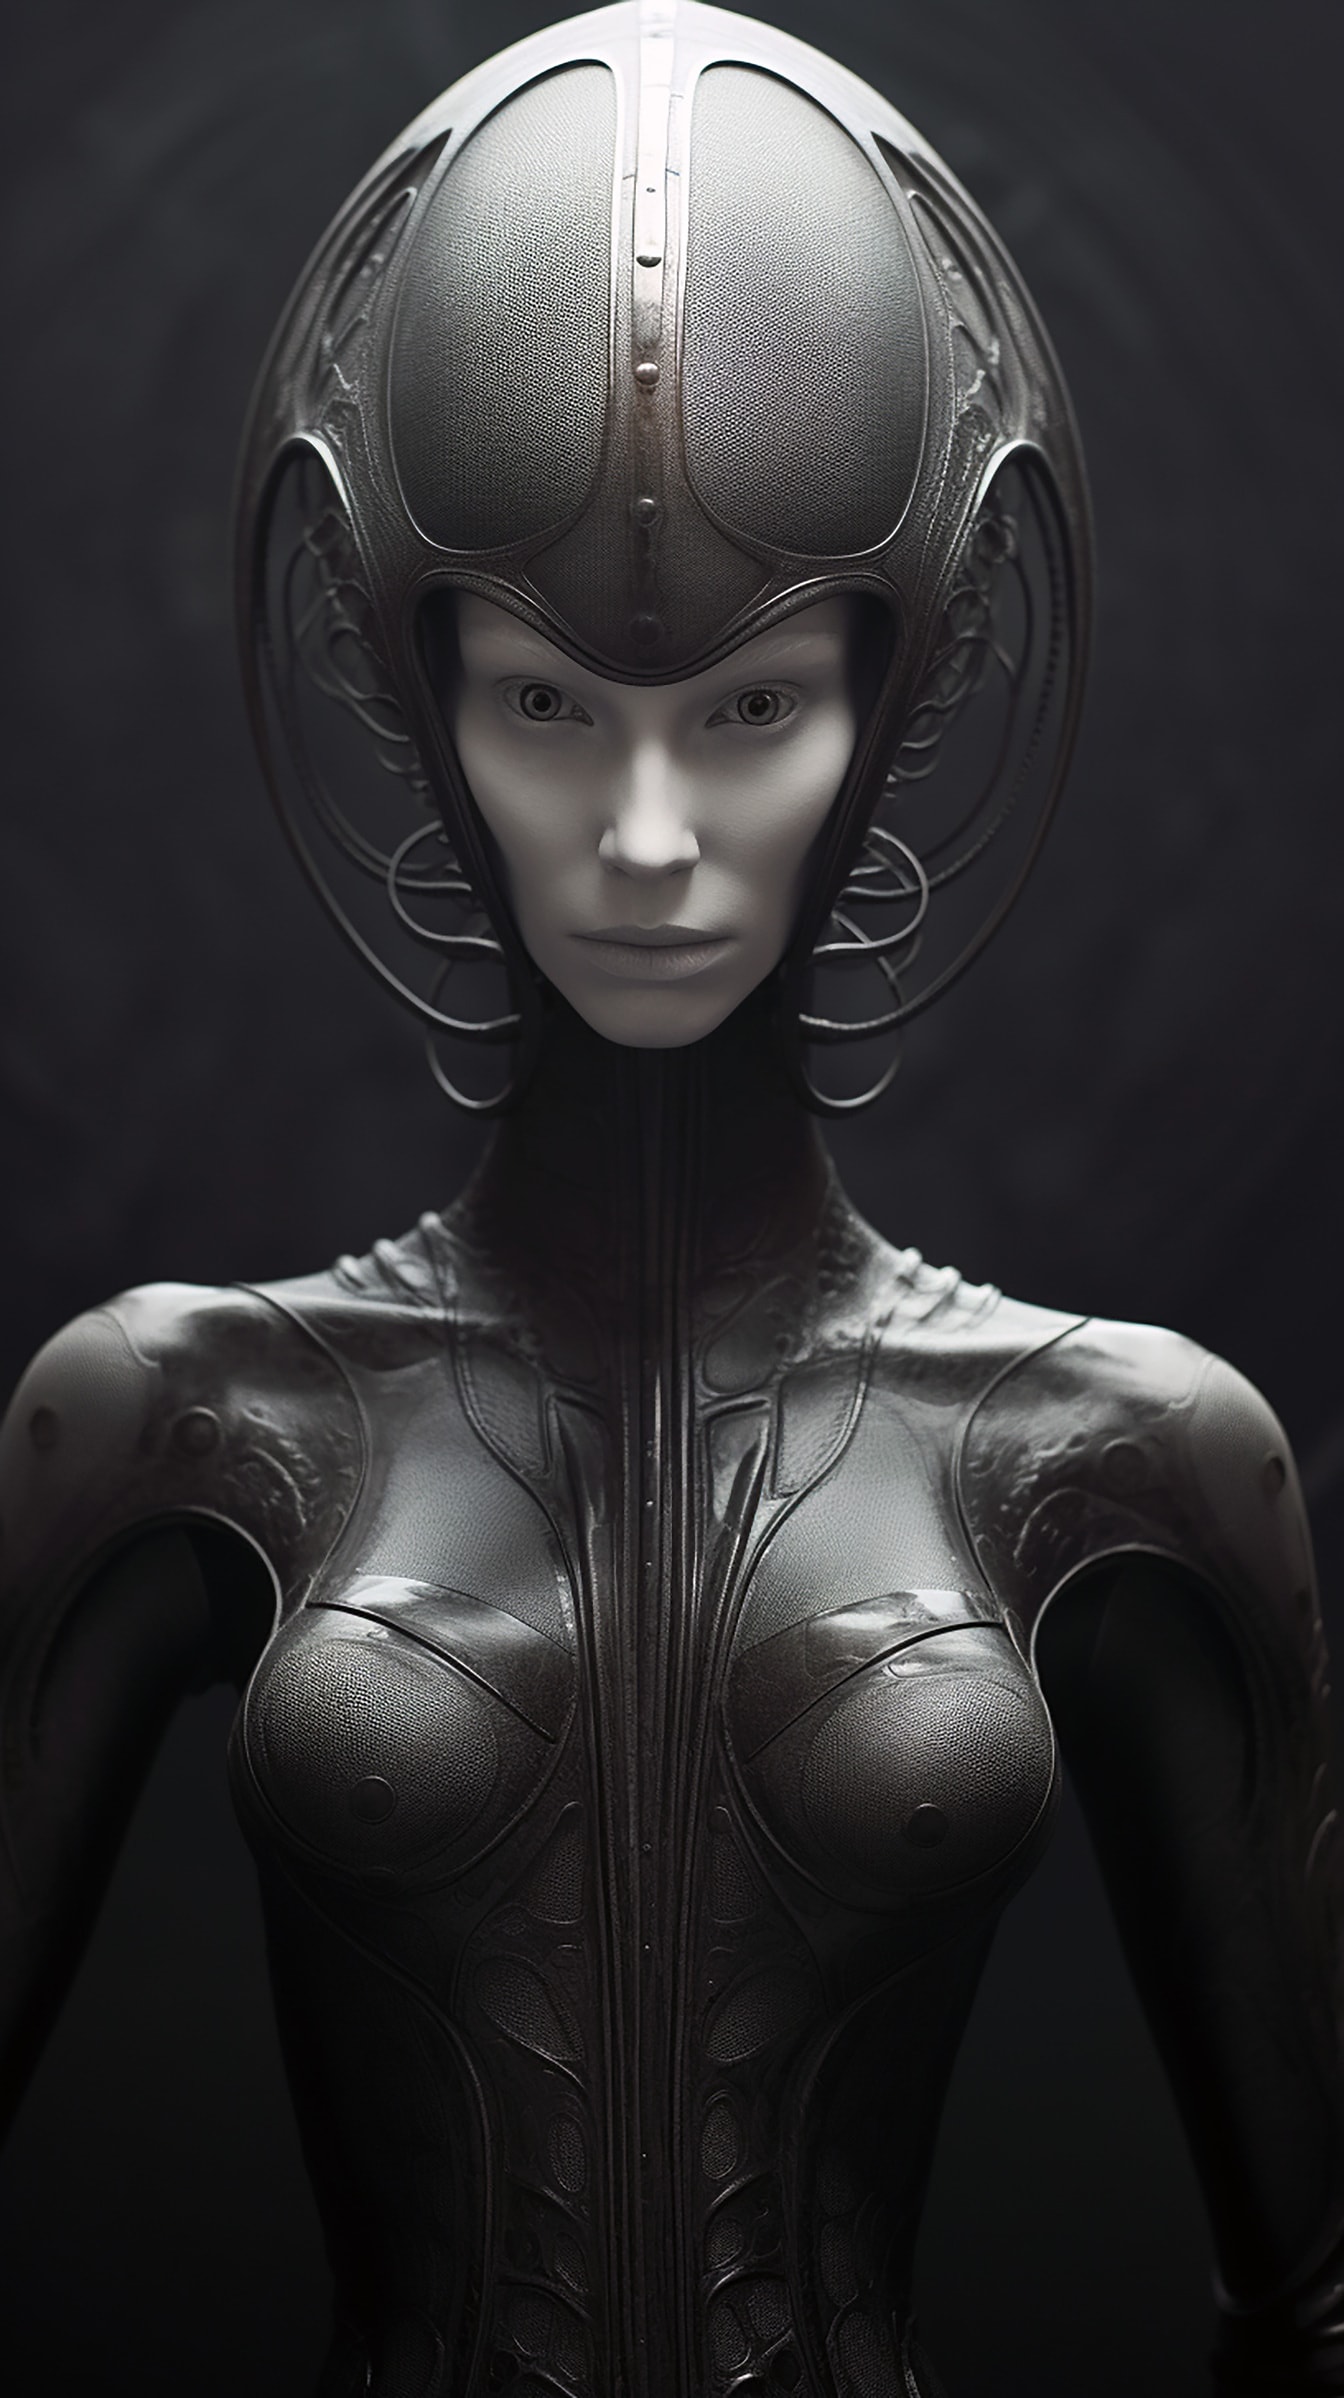 Portrait de princesse extraterrestre de conte de fées avec casque gris